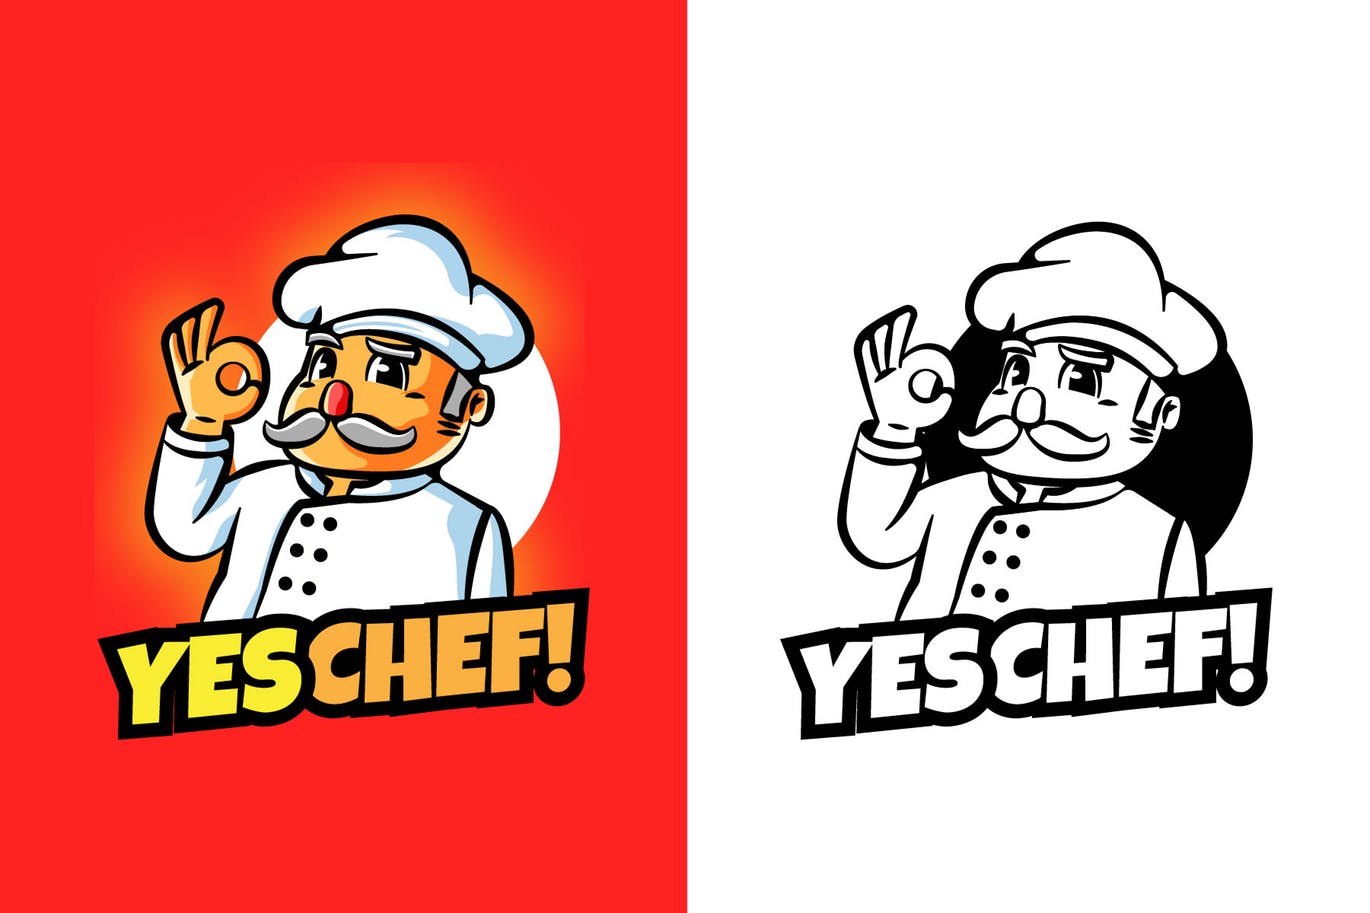 大厨卡通形象餐厅美食品牌Logo设计素材中国精选模板 YES CHEF Mascot Logo插图